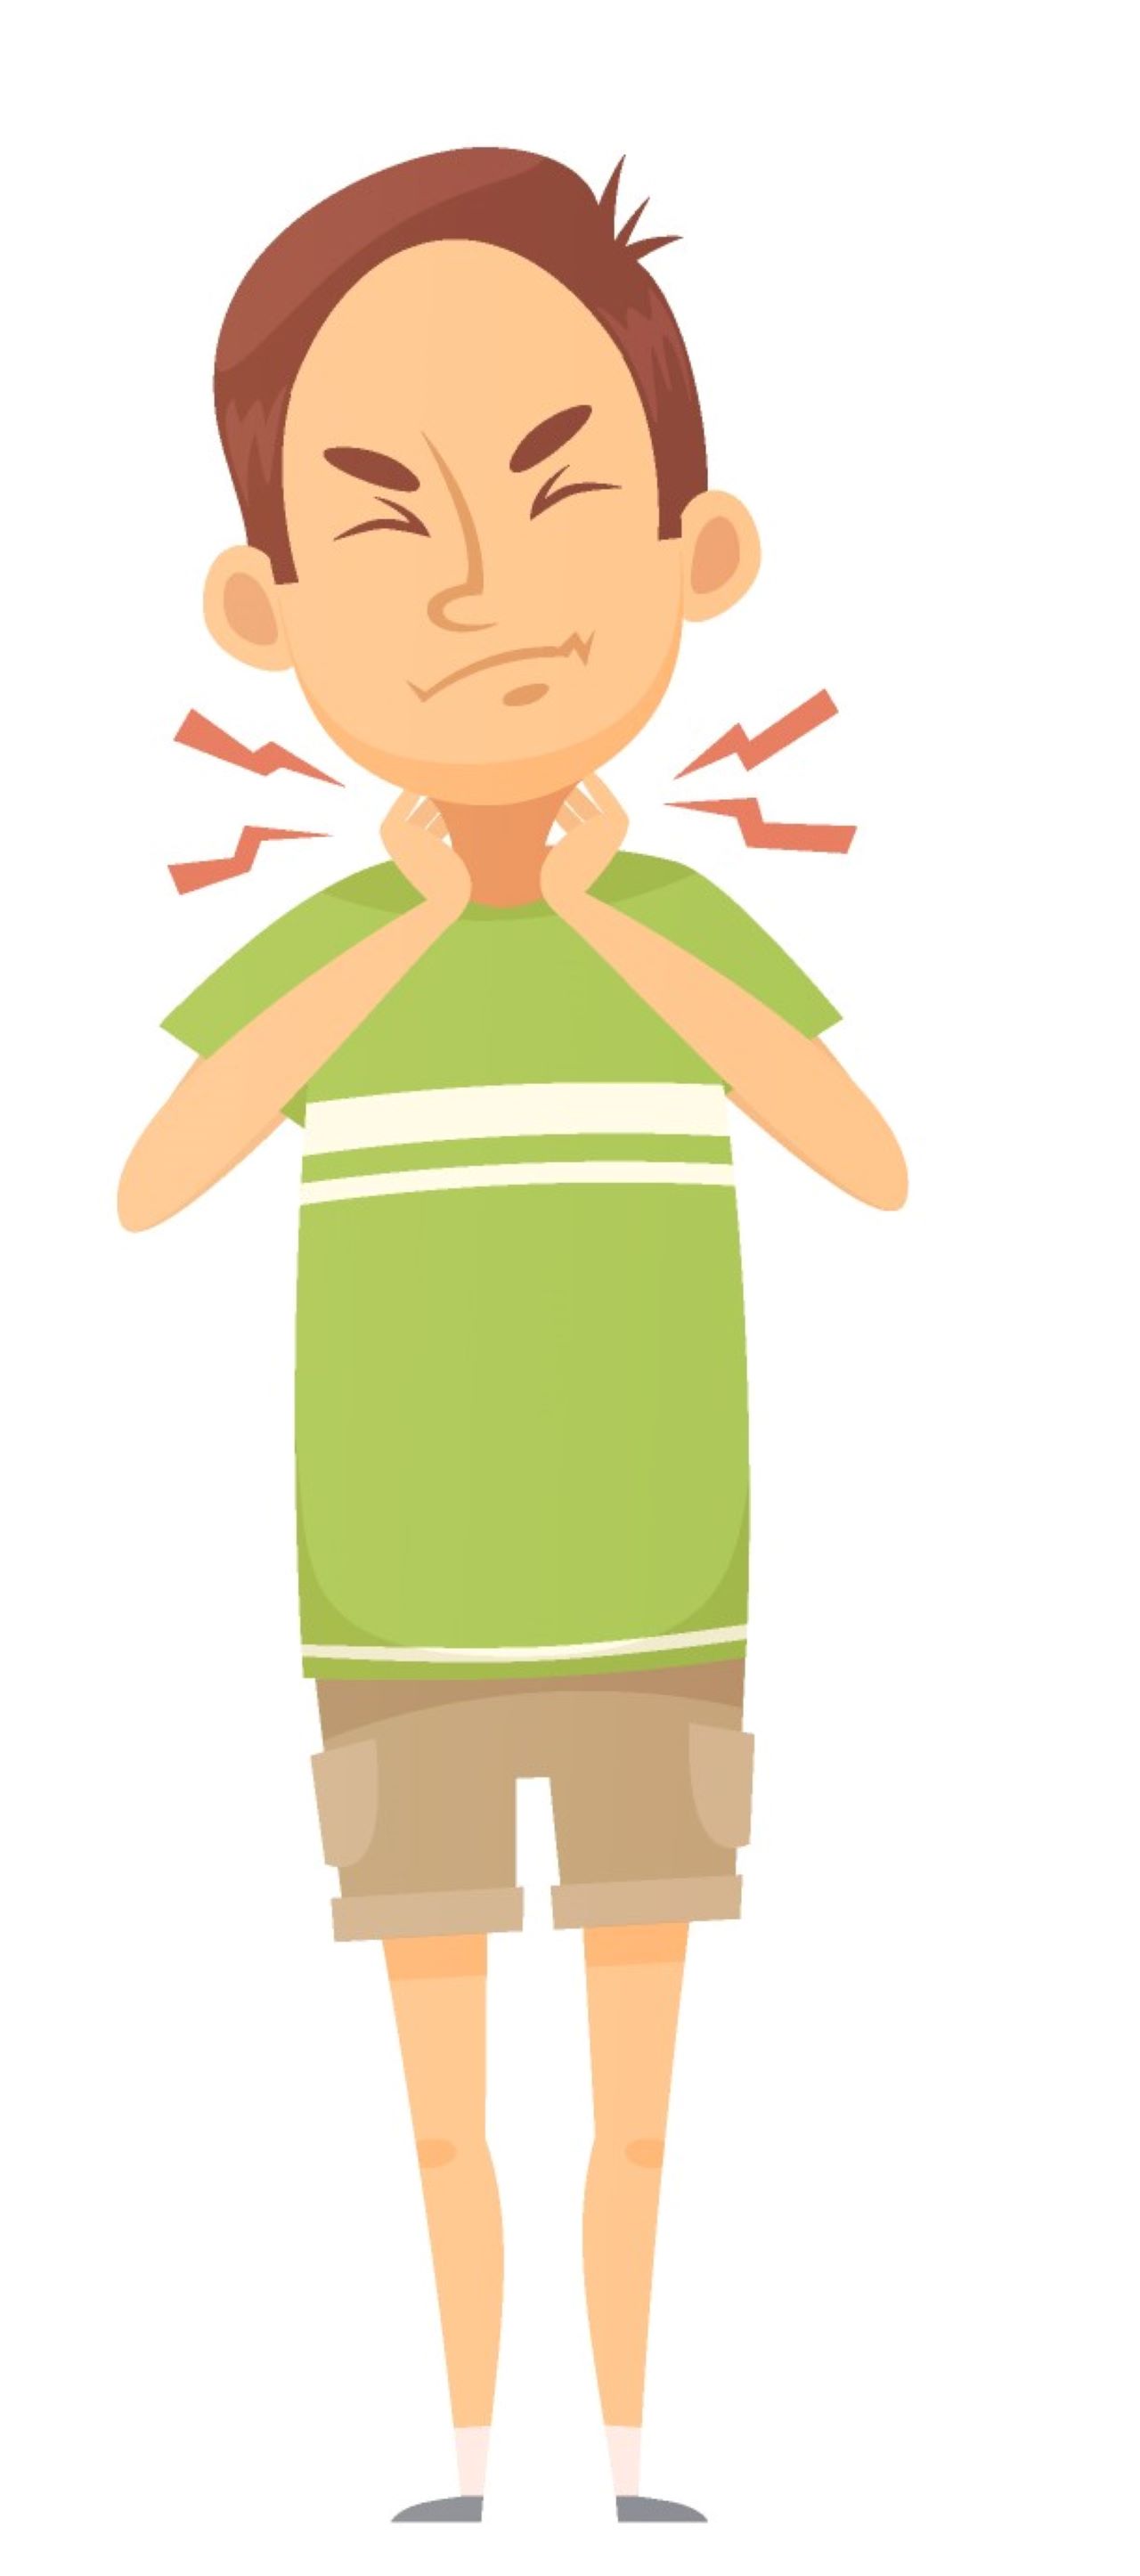 Ilustracija prikazuje dječaka kojeg boli grlo.